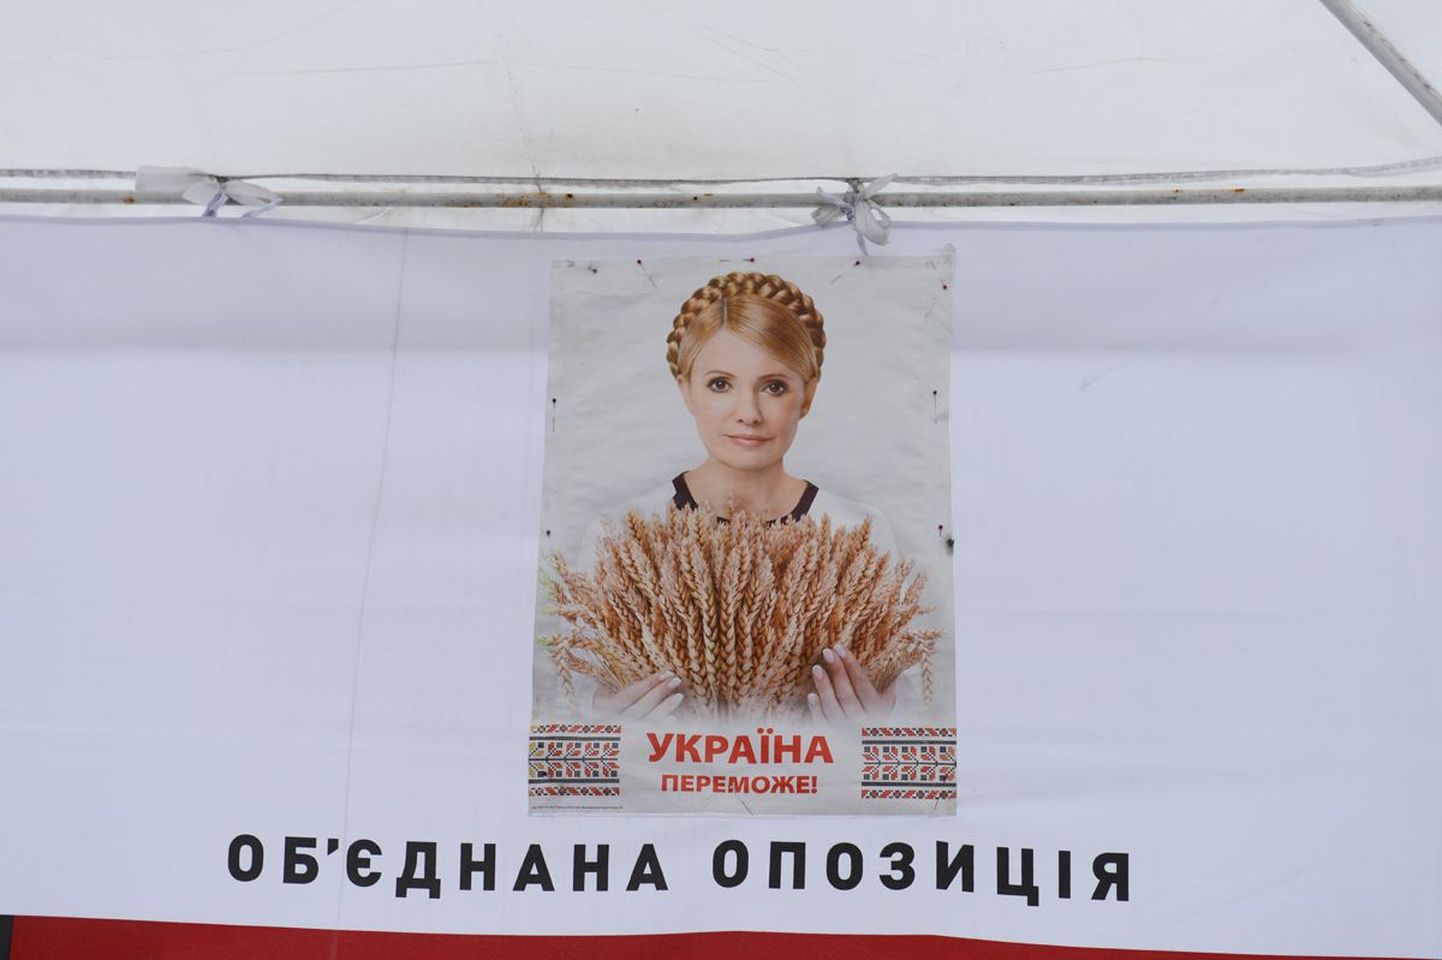 Состояние бывшего украинского премьера Юлии Тимошенко, проходящей лечение в харьковской клинической больнице, резко ухудшилось.